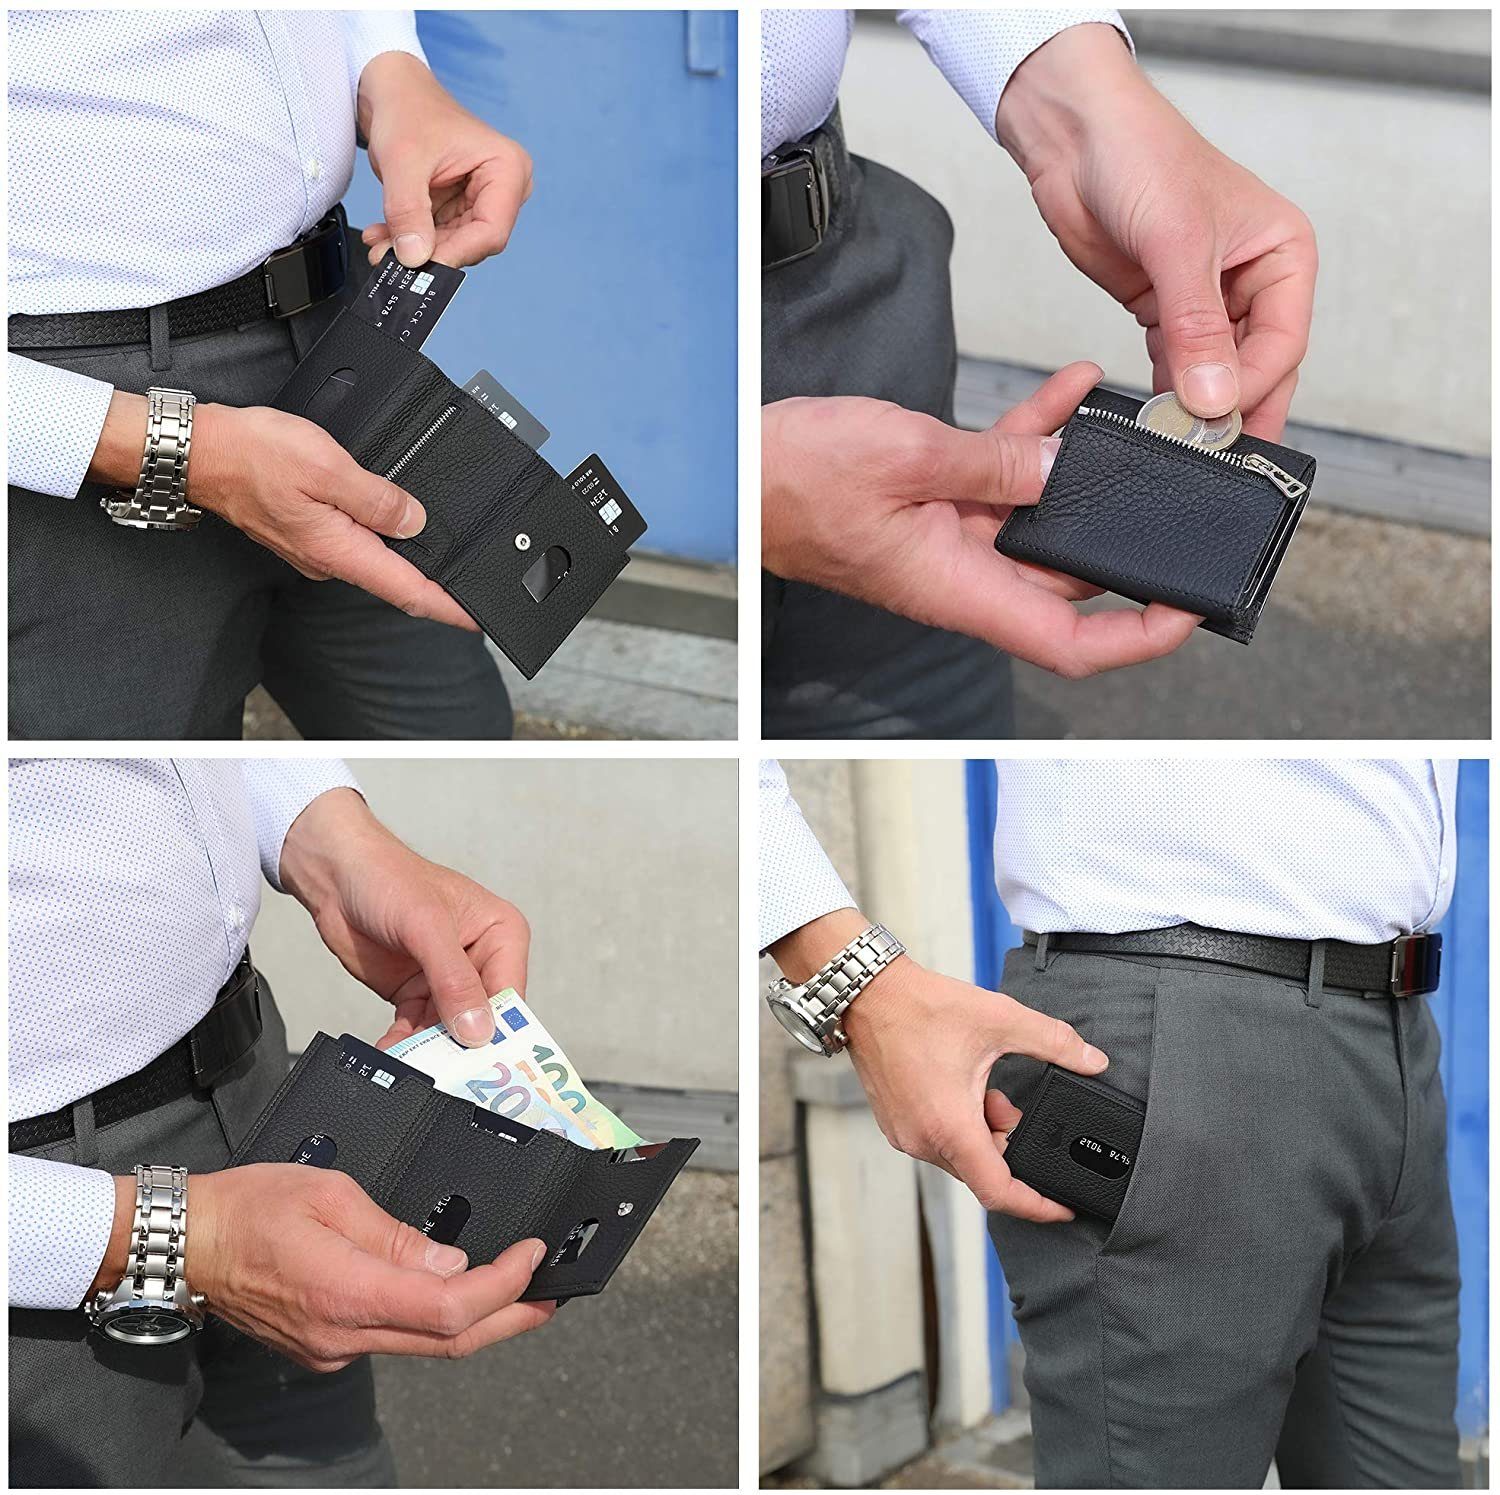 Schwarz Slim echt Wallet [12 Europe in [RFID-Schutz], Matt mit Macde Leder, Riga RFID Karten] Münzfach Slimwallet Pelle Schutz, Solo Brieftasche